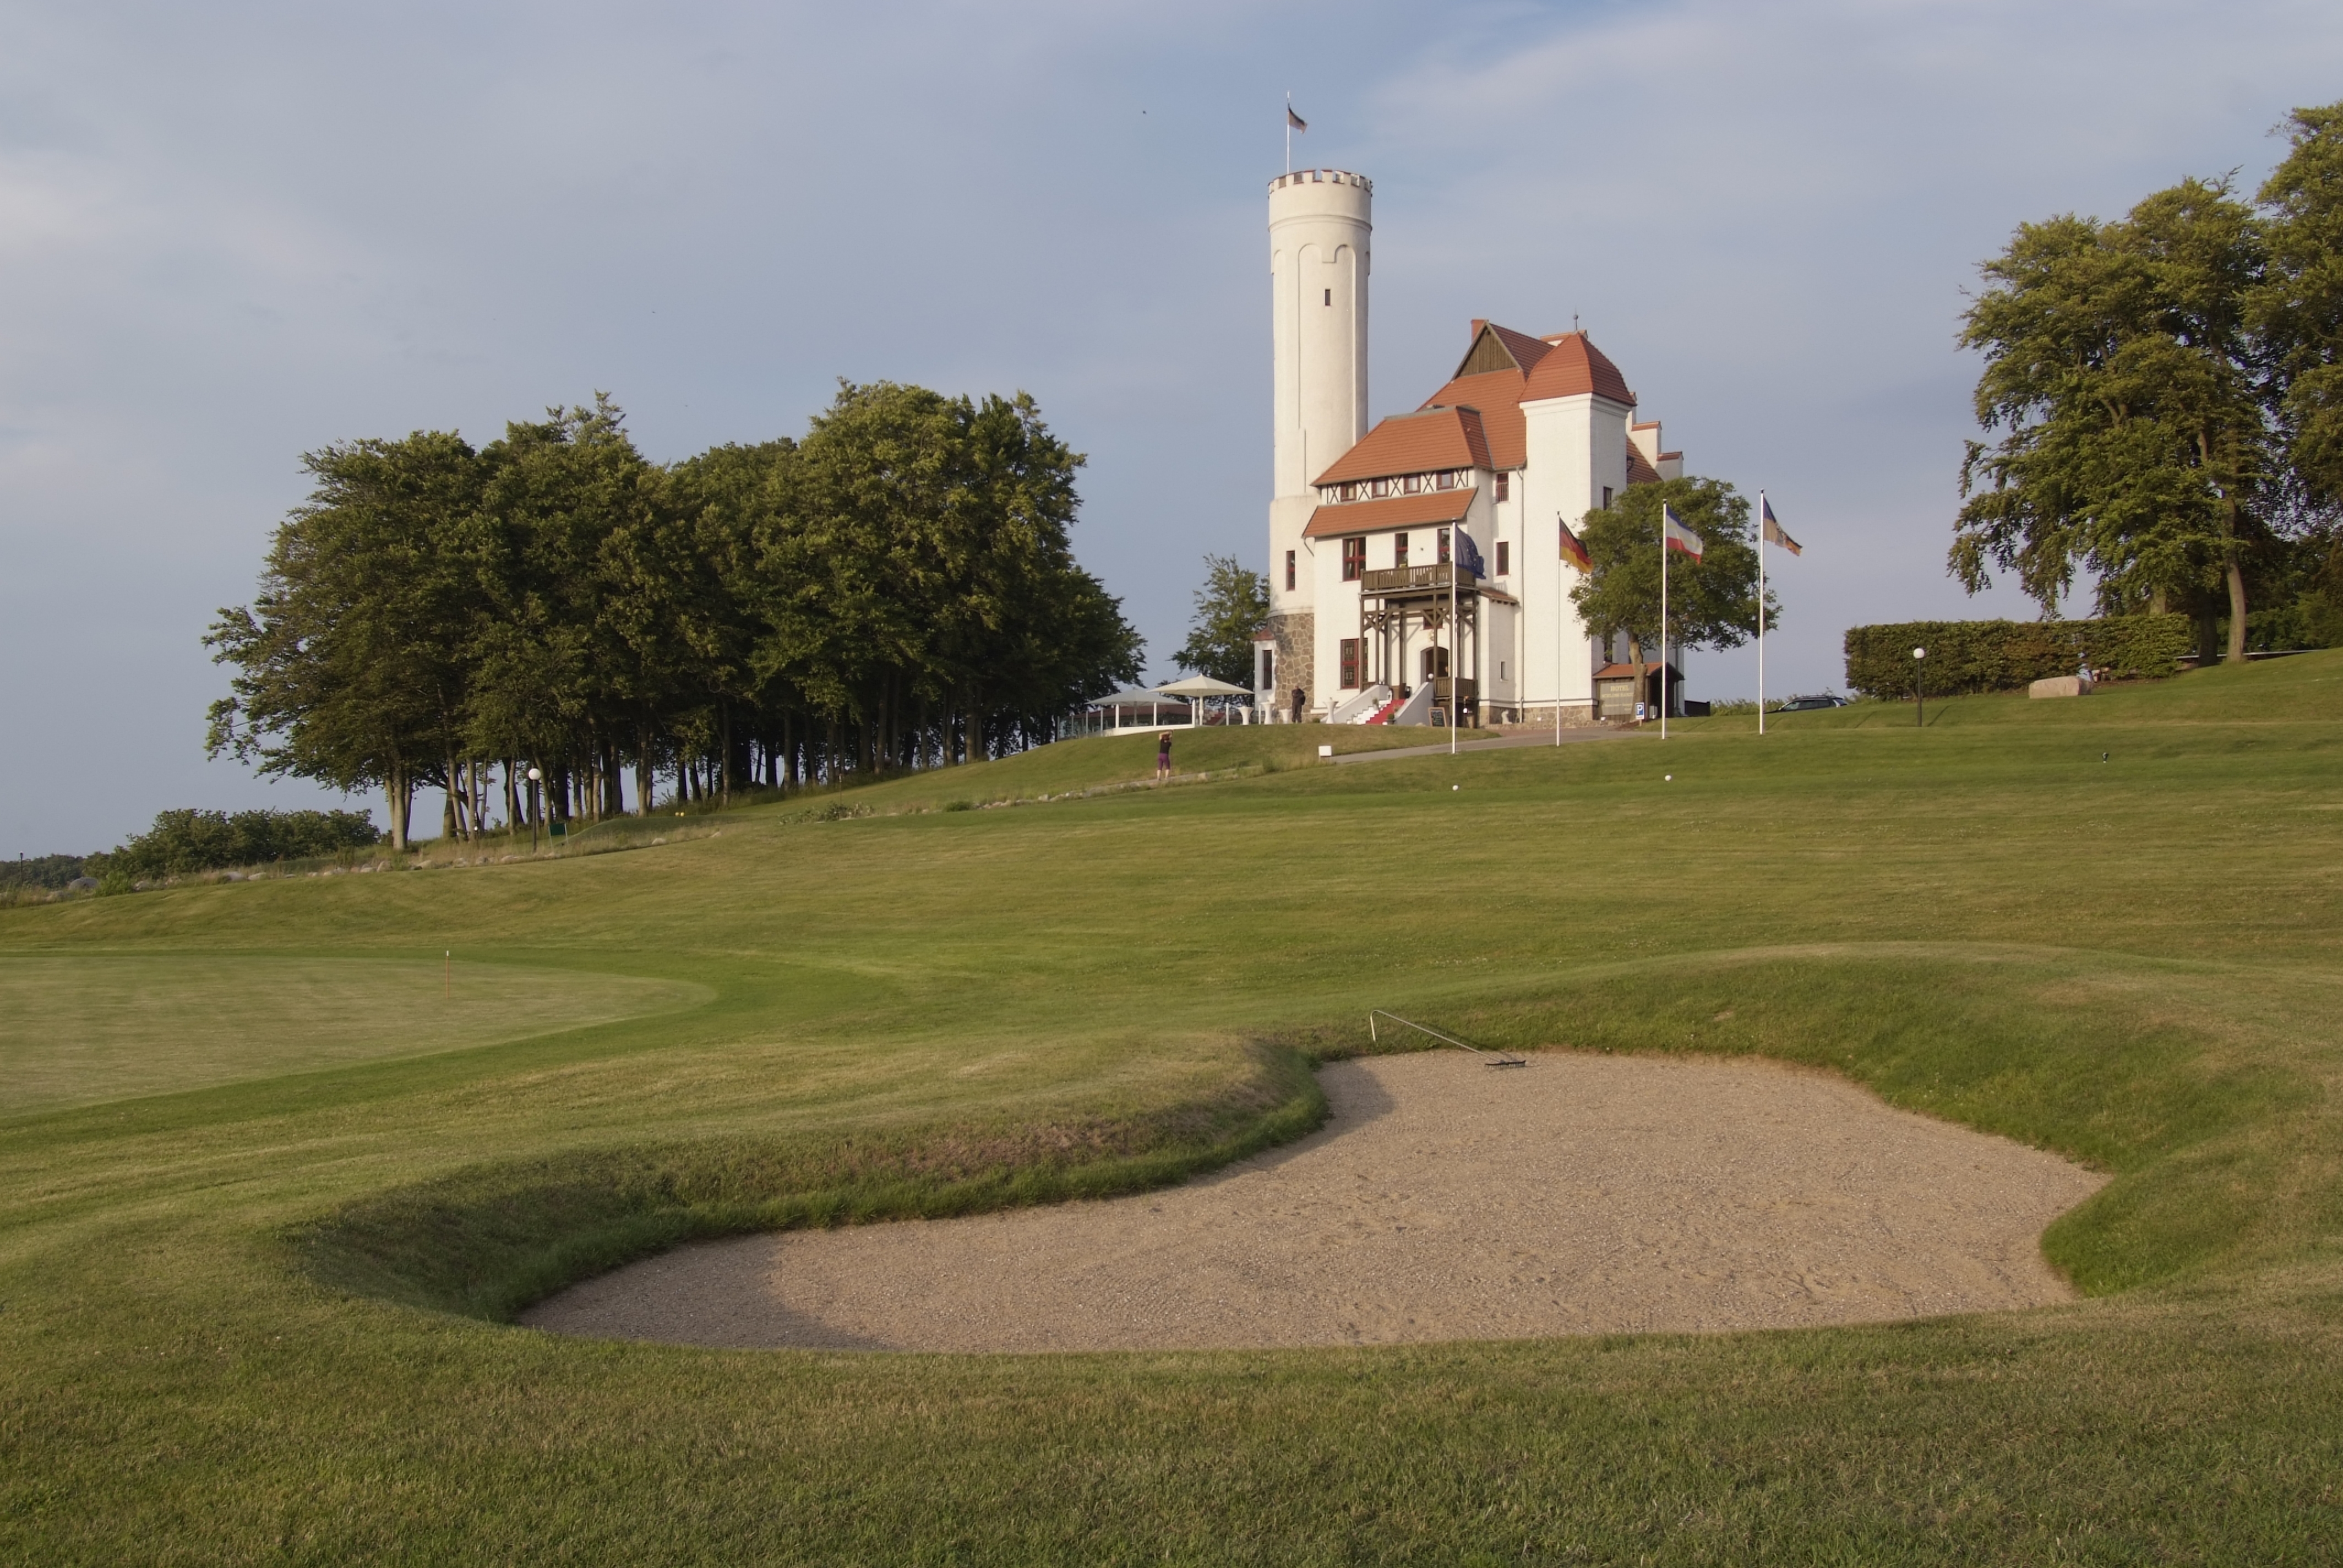 Golfplatz des Hotels Schloss Ranzow in Lohme.
